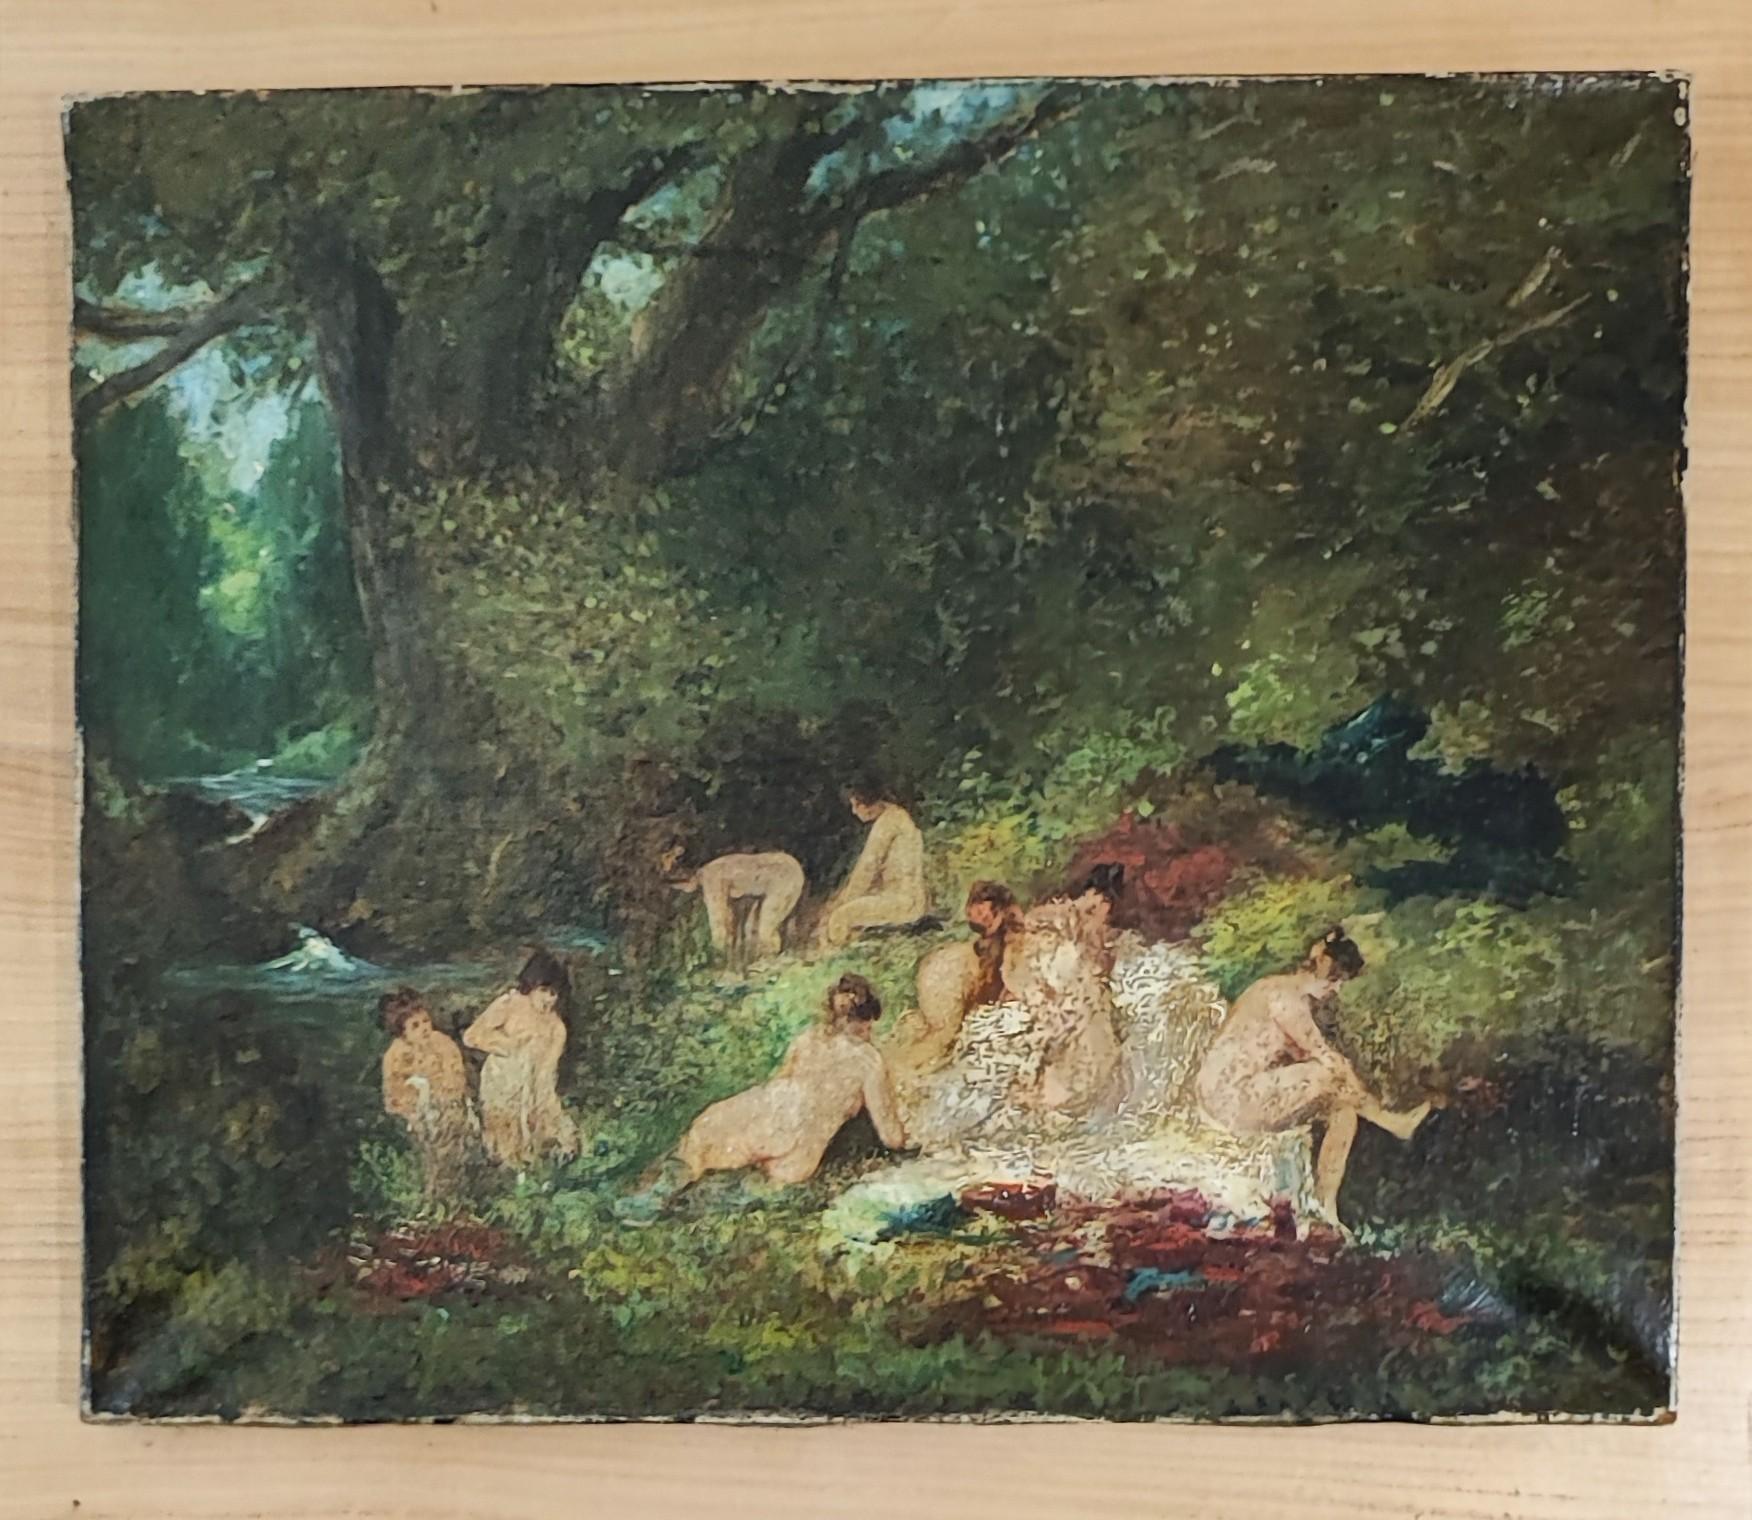 Nymphen am Fluss – Painting von Narcisse Virgilio Díaz de la Peña